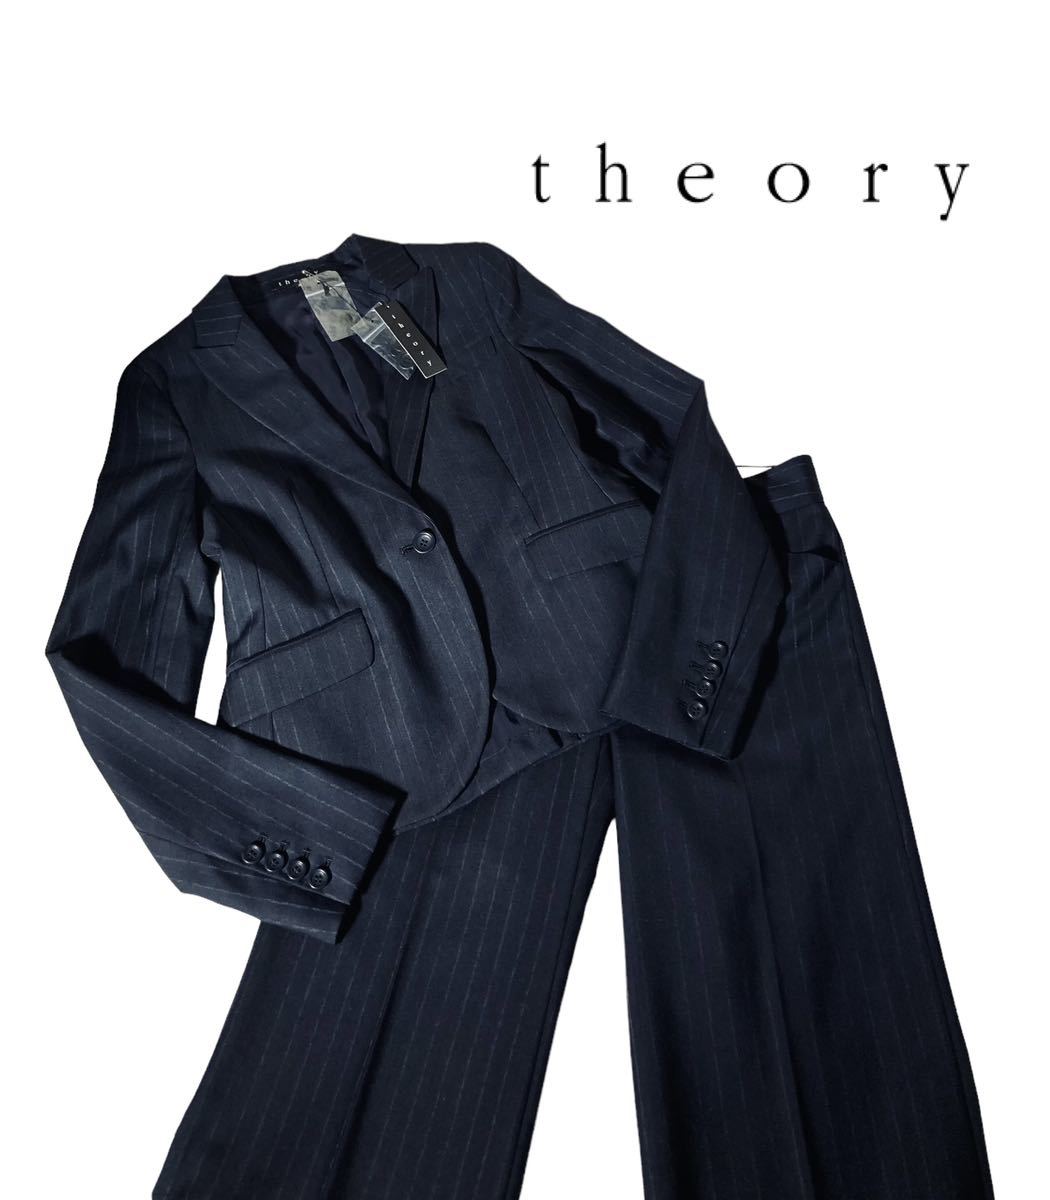 ヤフオク! -(theory セオリー) スーツの中古品・新品・未使用品一覧